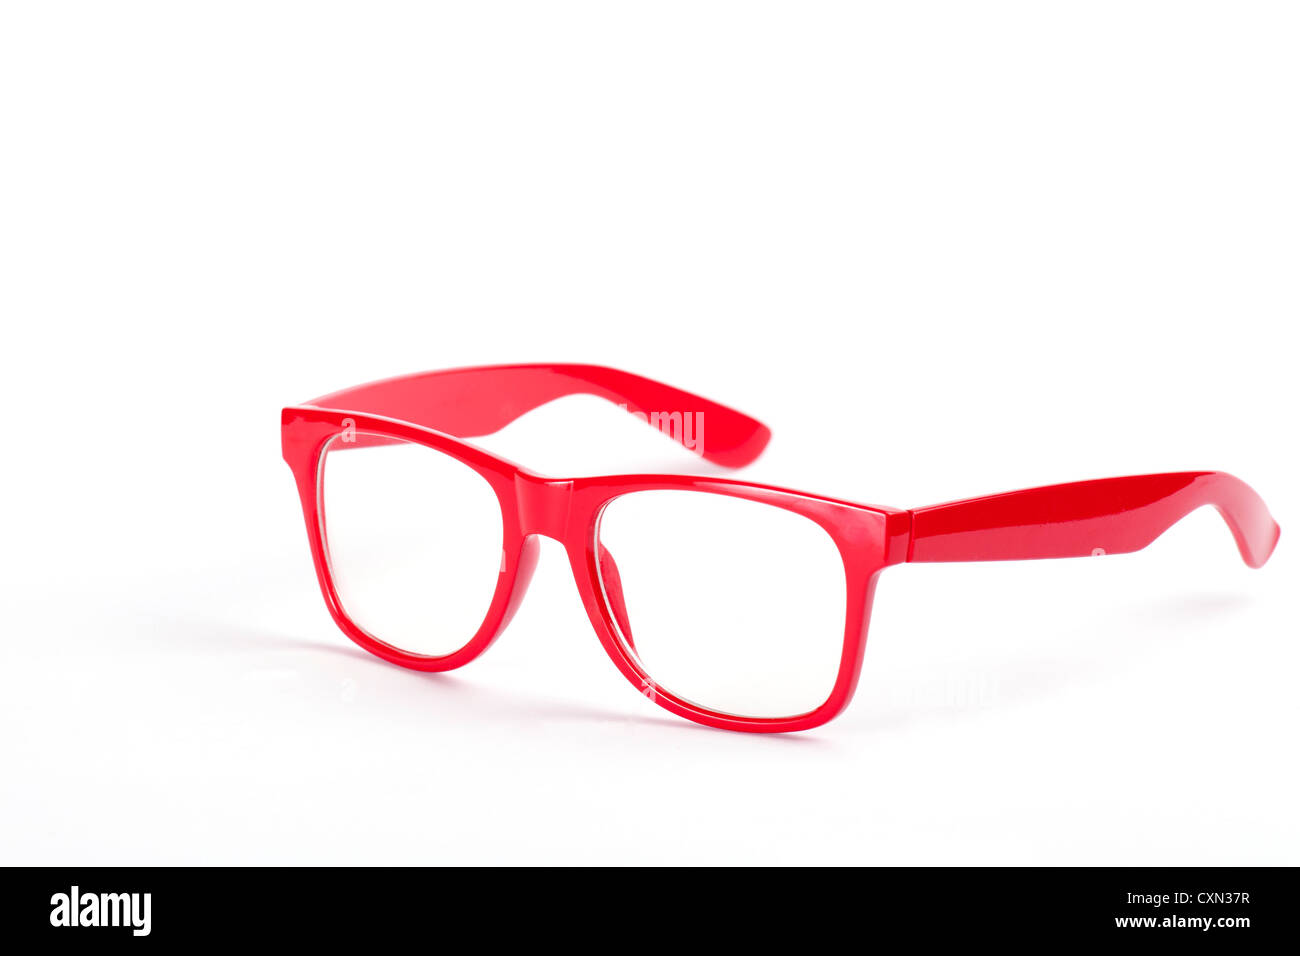 Cadre de lunettes Banque de photographies et d'images à haute résolution -  Alamy